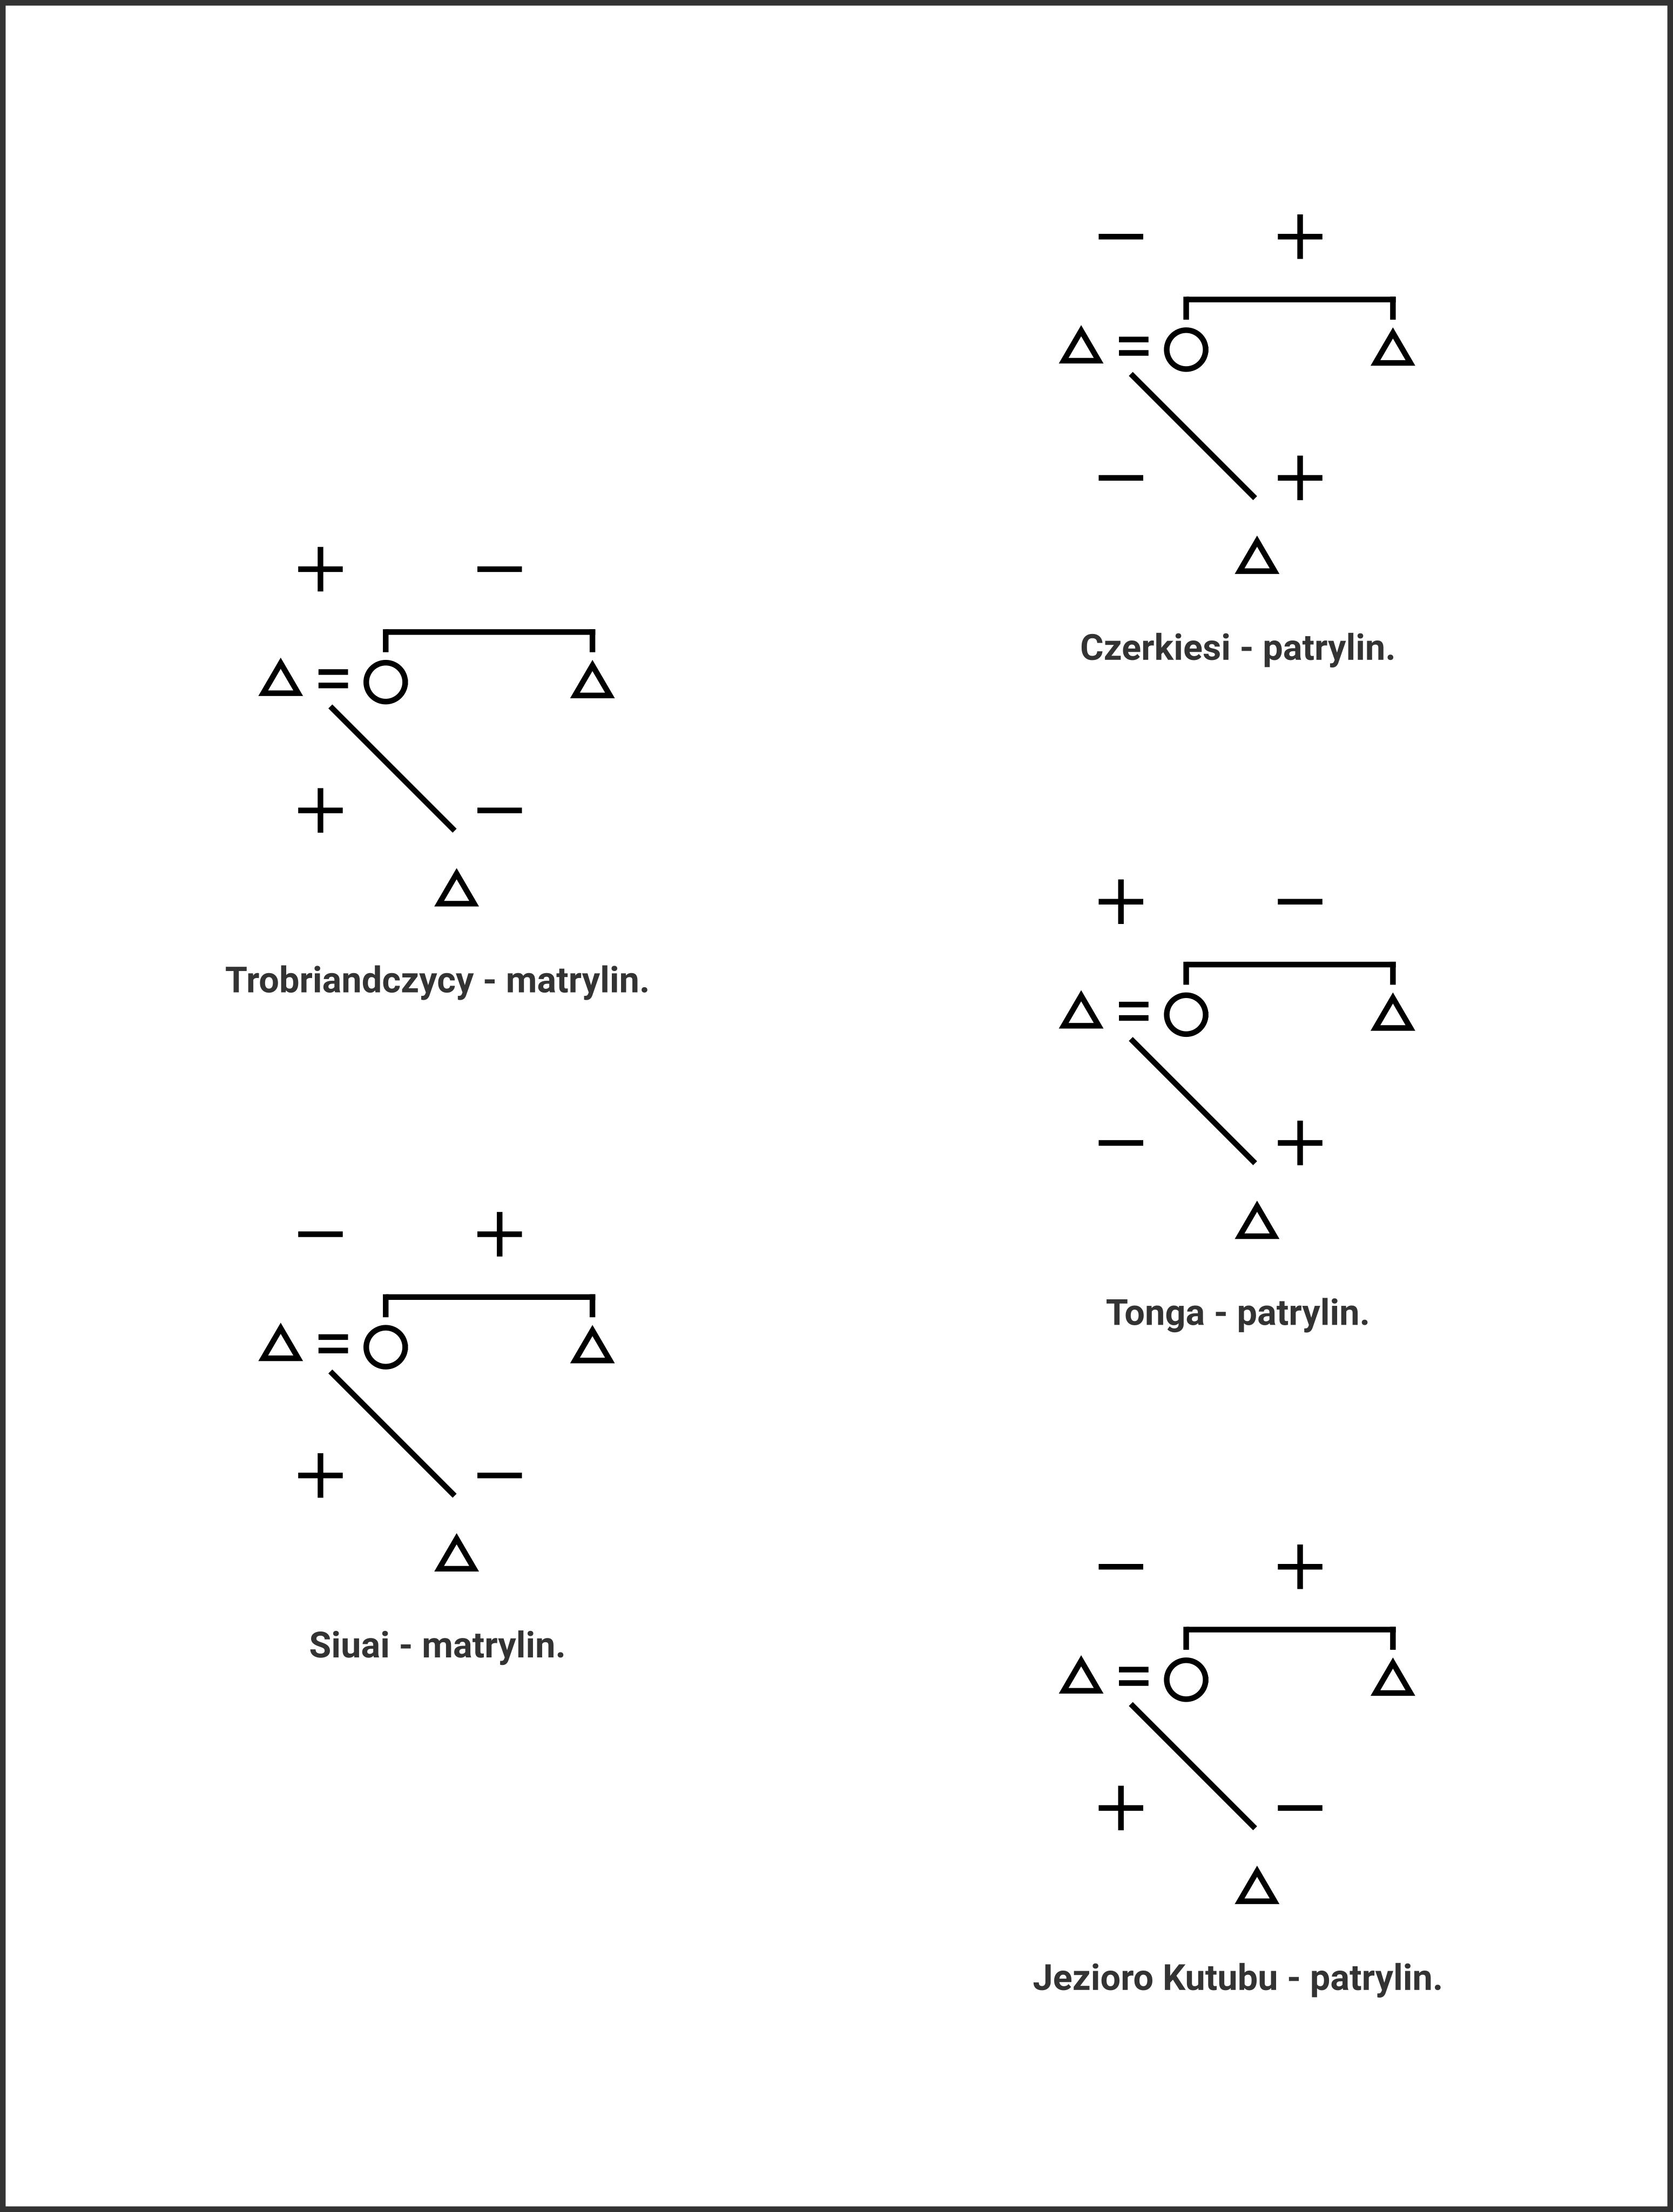 Legenda: Symbole trójkąta odnoszą się do męskich członków rodziny: ojca, syna i wuja (brata matki), kółko oznacza matkę. Plus i minus oznaczają relacje bliskie (+) bądź zdystansowane (-). Graf pokazuje, że zawsze mamy do czynienia z taką samą strukturą opartą na opozycjach binarnych, w której zmienia się jedynie rozkład wartości. Wykorzystano za zgodą autora rysunku Jana Smolarczyka.
